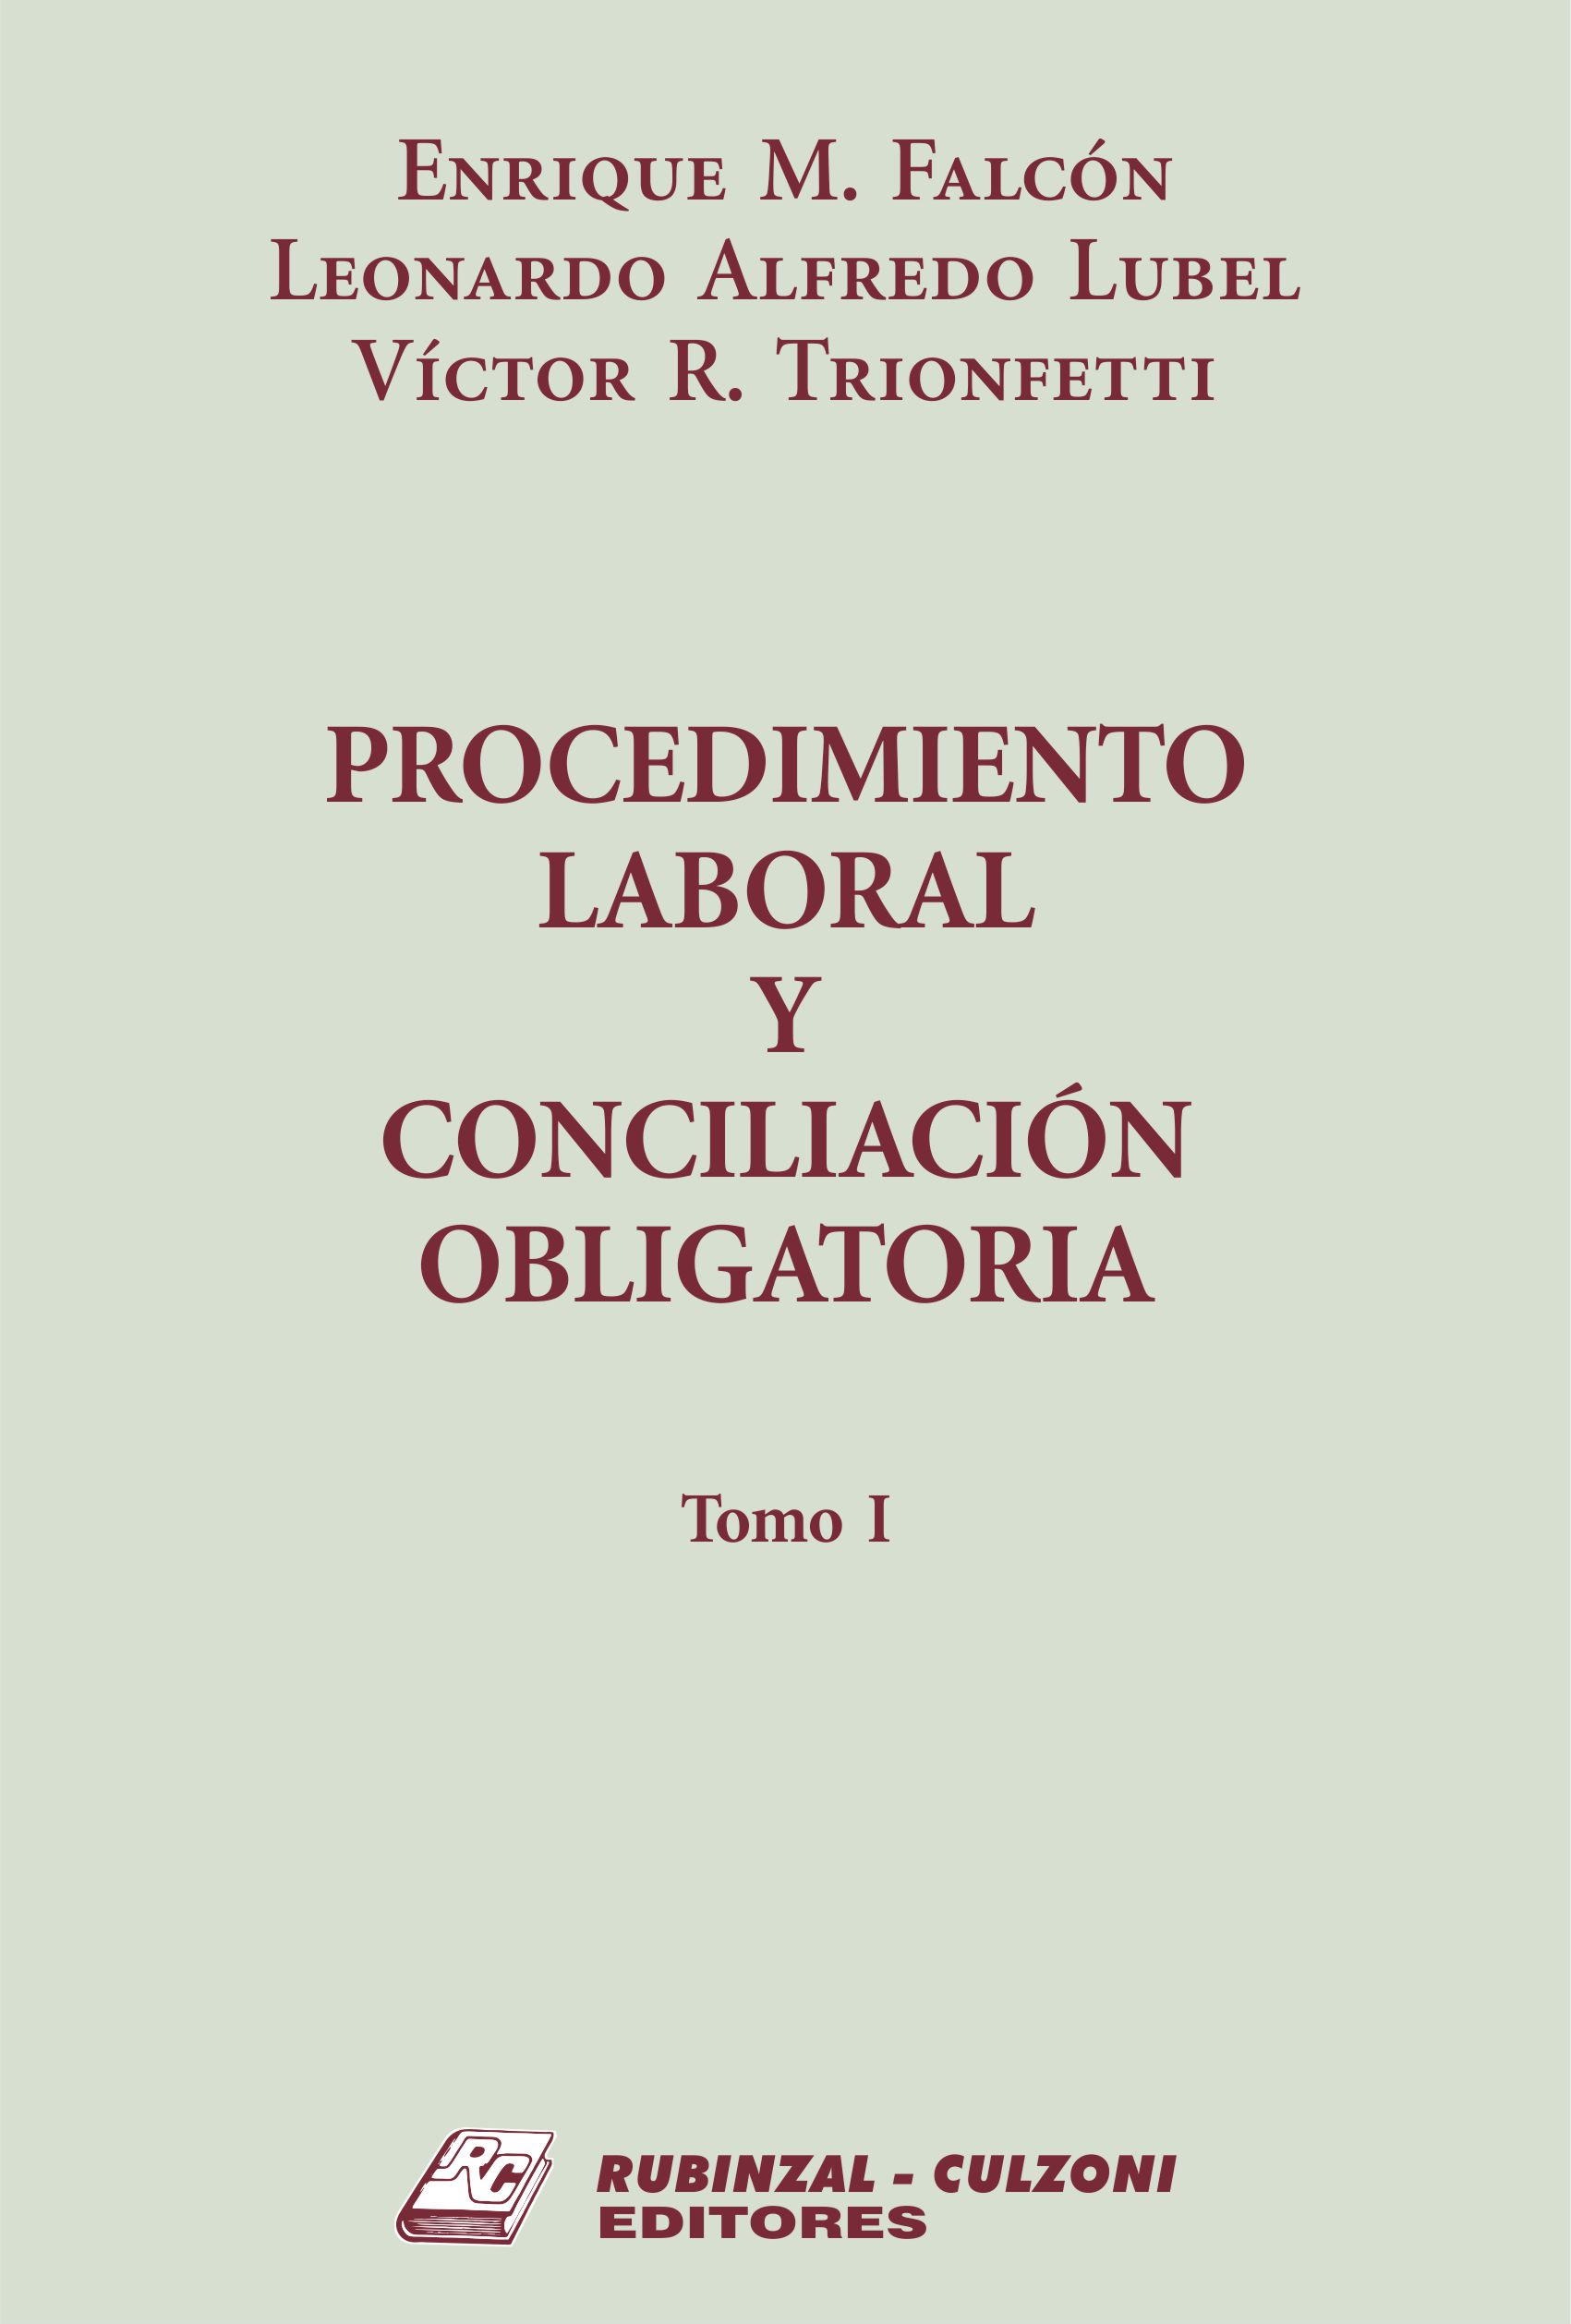 Procedimiento Laboral y Conciliación Obligatoria. - Tomo I.